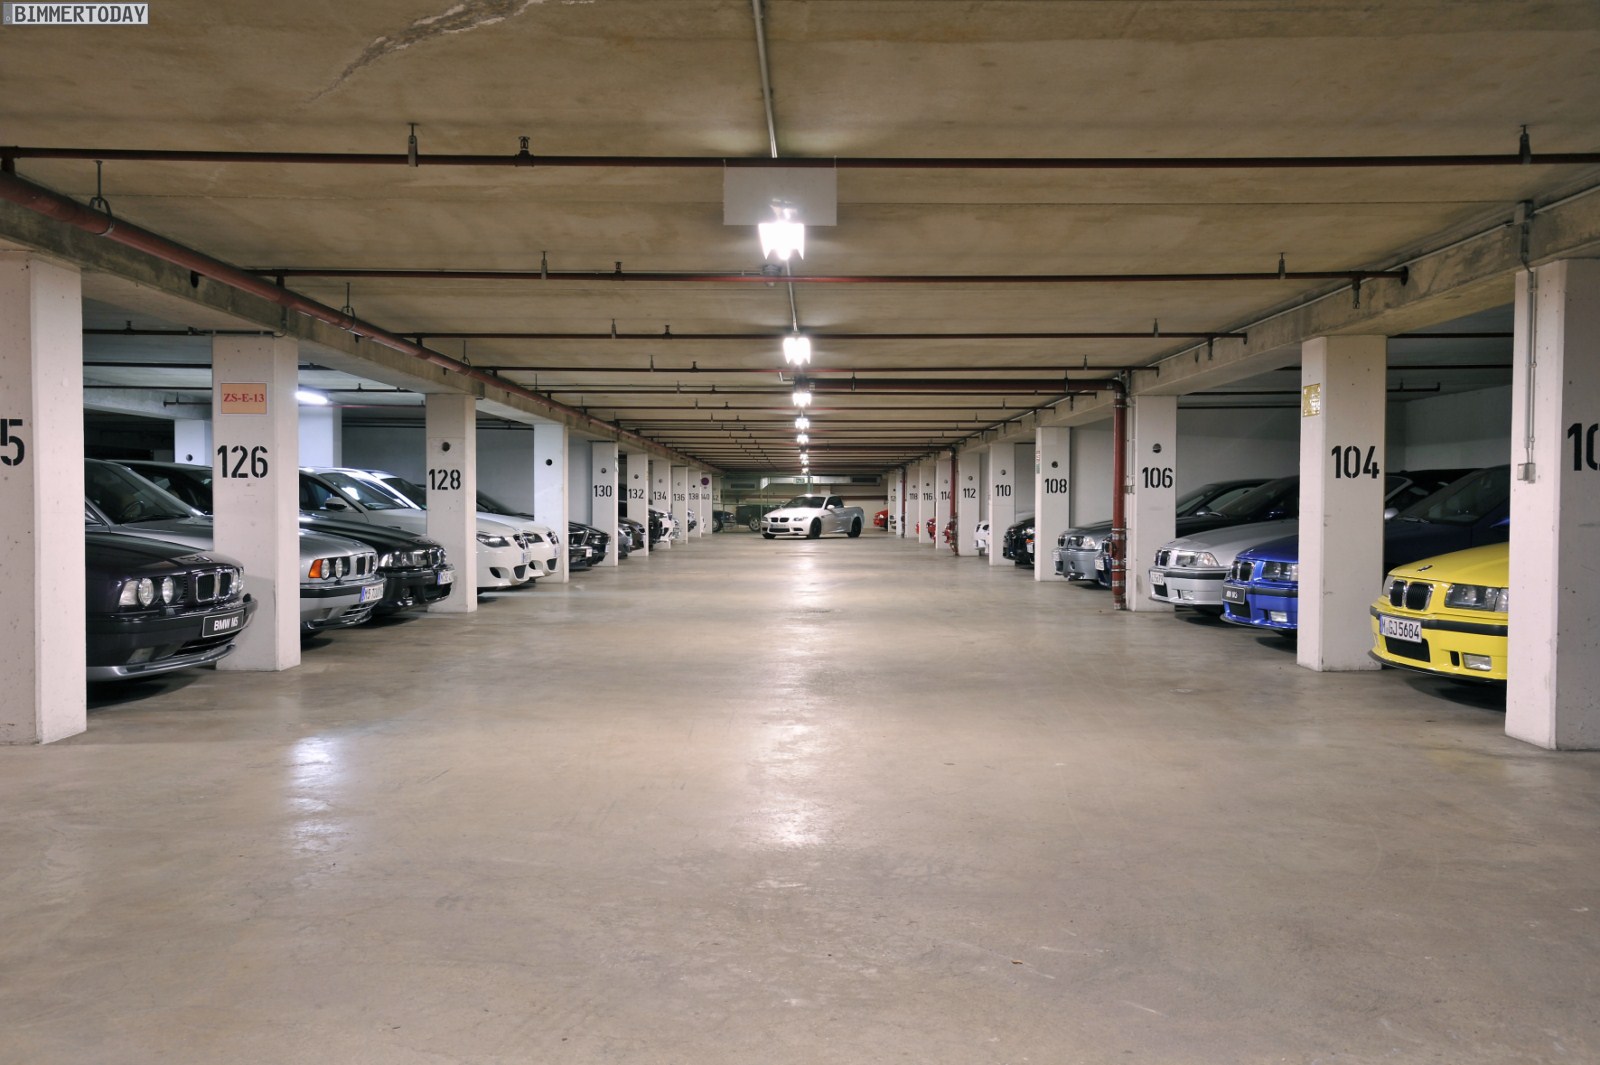 Гаражи машино место. BMW X 7 на подземном паркинге. Подземная парковка. Подземный гараж. Подземная стоянка для автомобилей.